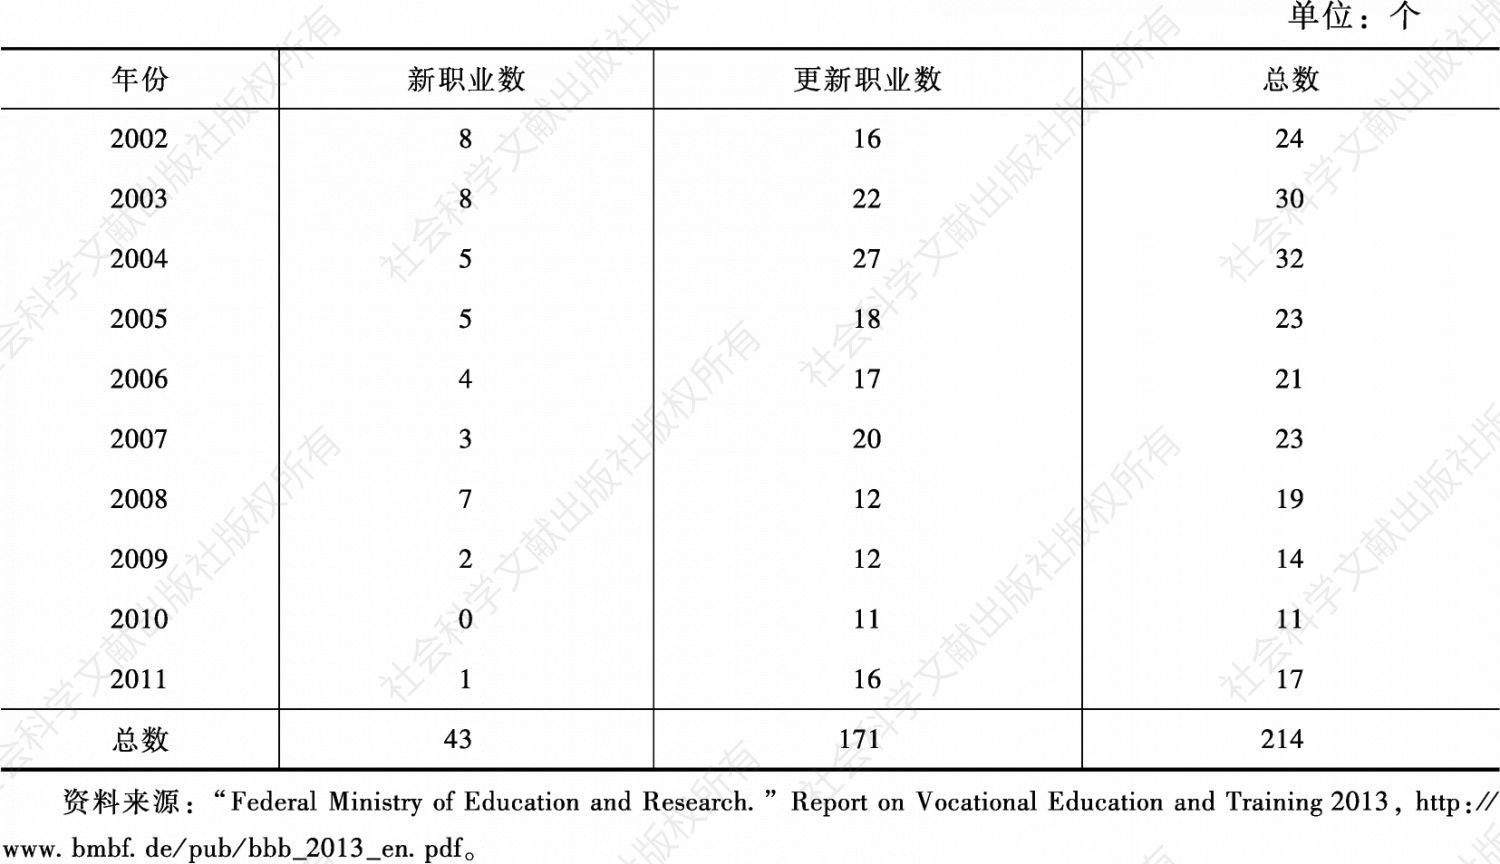 表4 新的和更新的受训职业数（2002～2011）